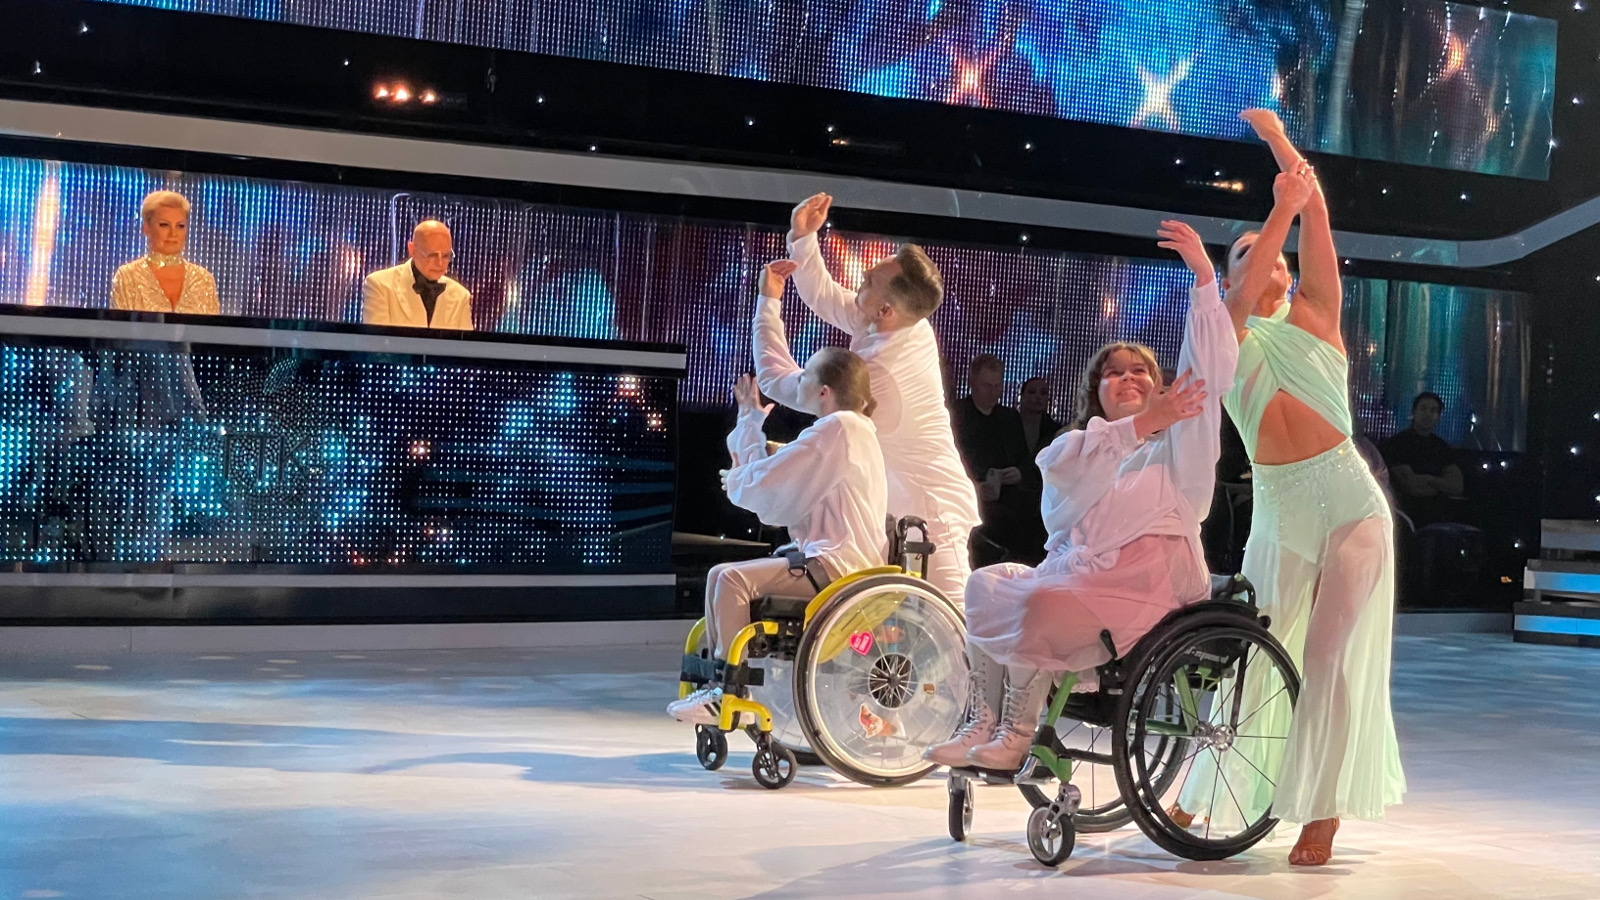 Kuvassa ovat Matti vasemmalla ja hänen edessään pyörätuolissa Viivi Aalto. Oikealla on Katri vaalean vihreässä puvussa ja hänen edessään on Helmi Saxberg pyörätuolissa valkoisessa paidassa.